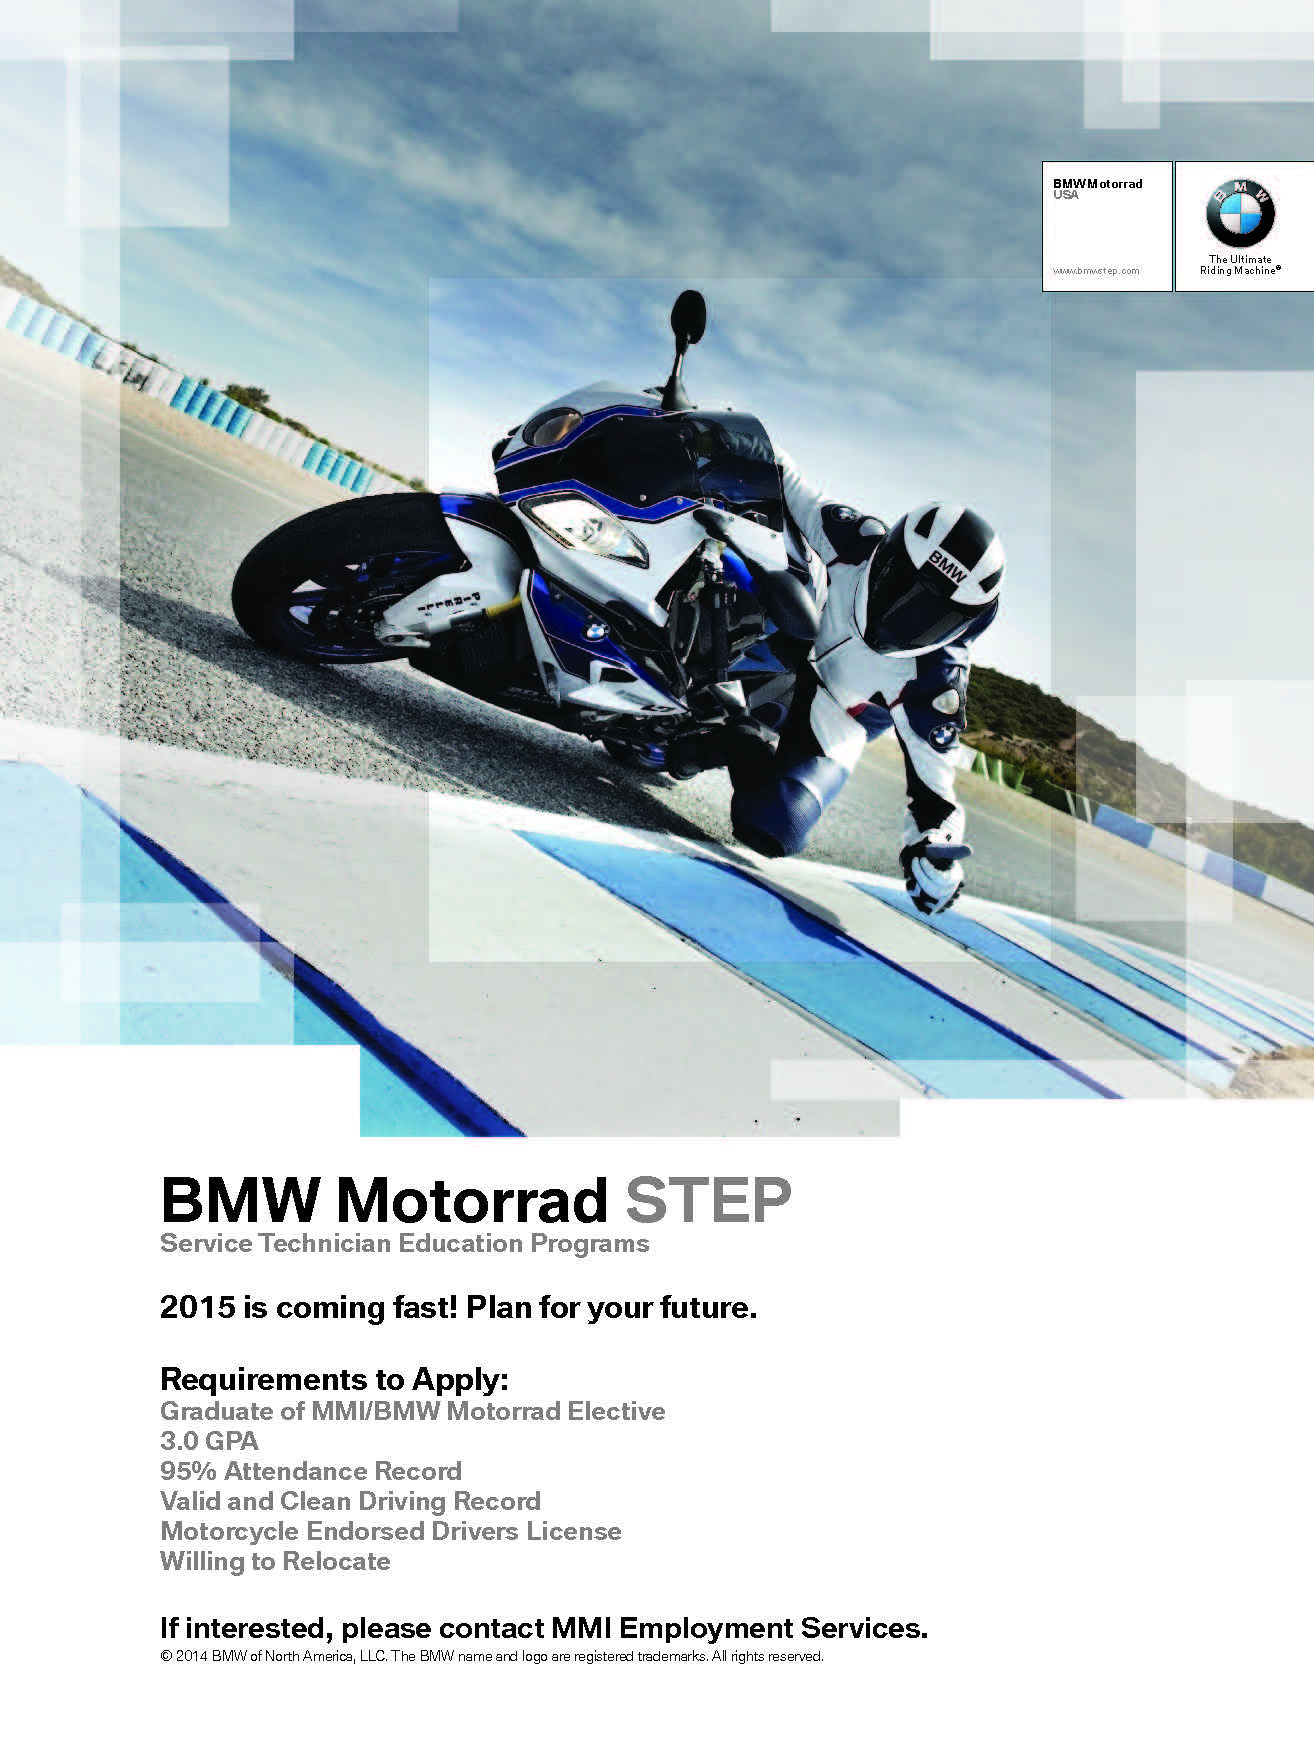 Motorrad Poster